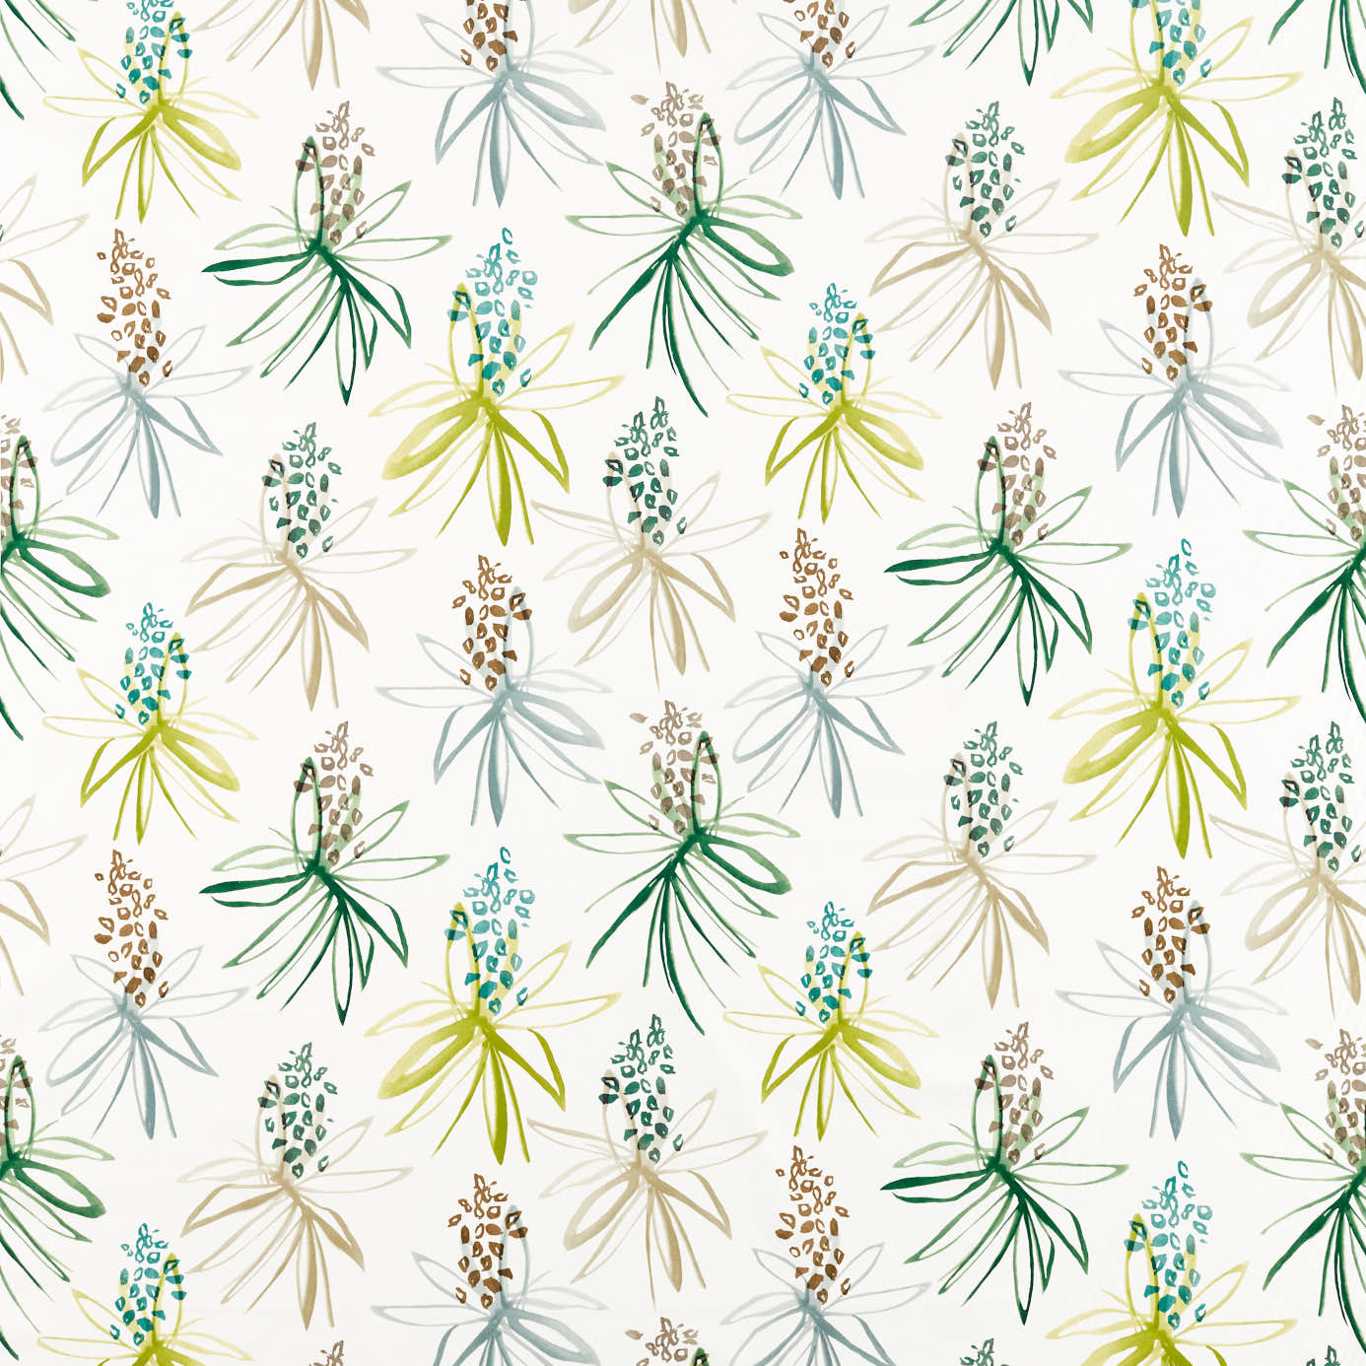 Tillandsia Fabric by Scion